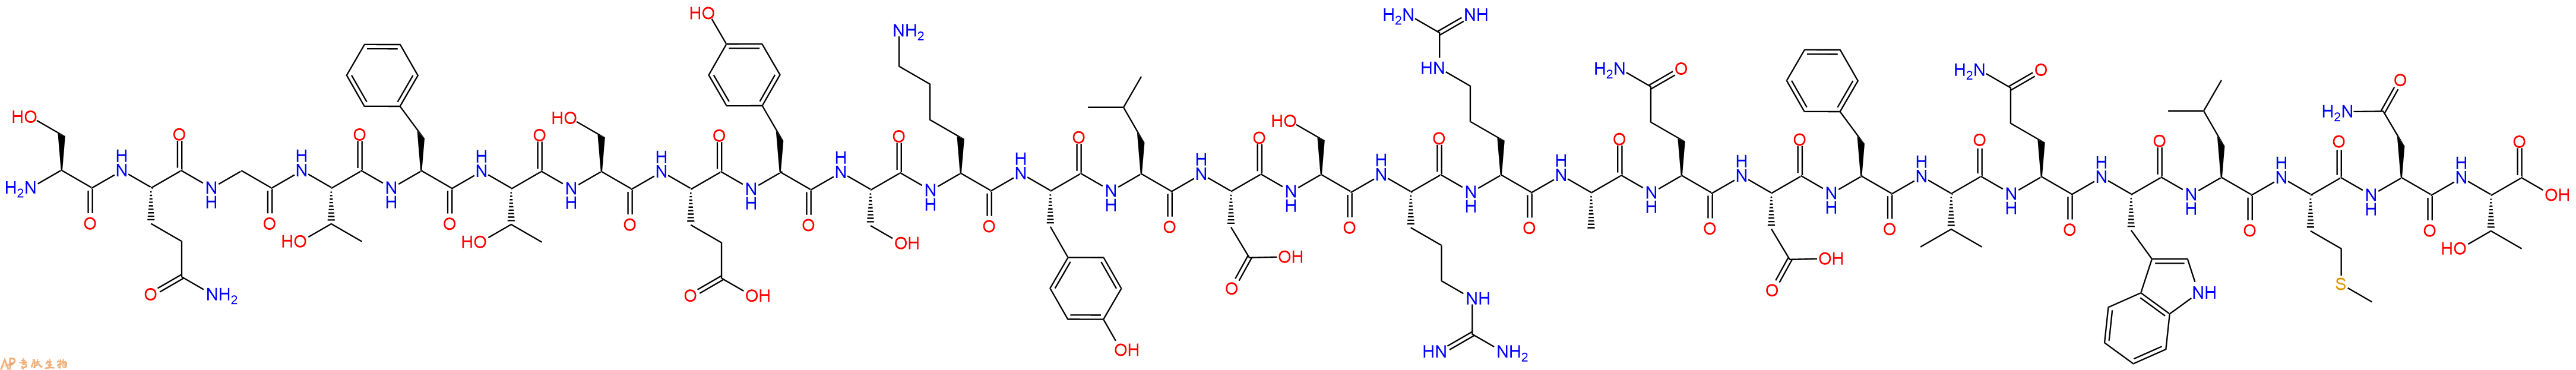 专肽生物产品胰高血糖素[Des-His1, Glu9]Glucagon